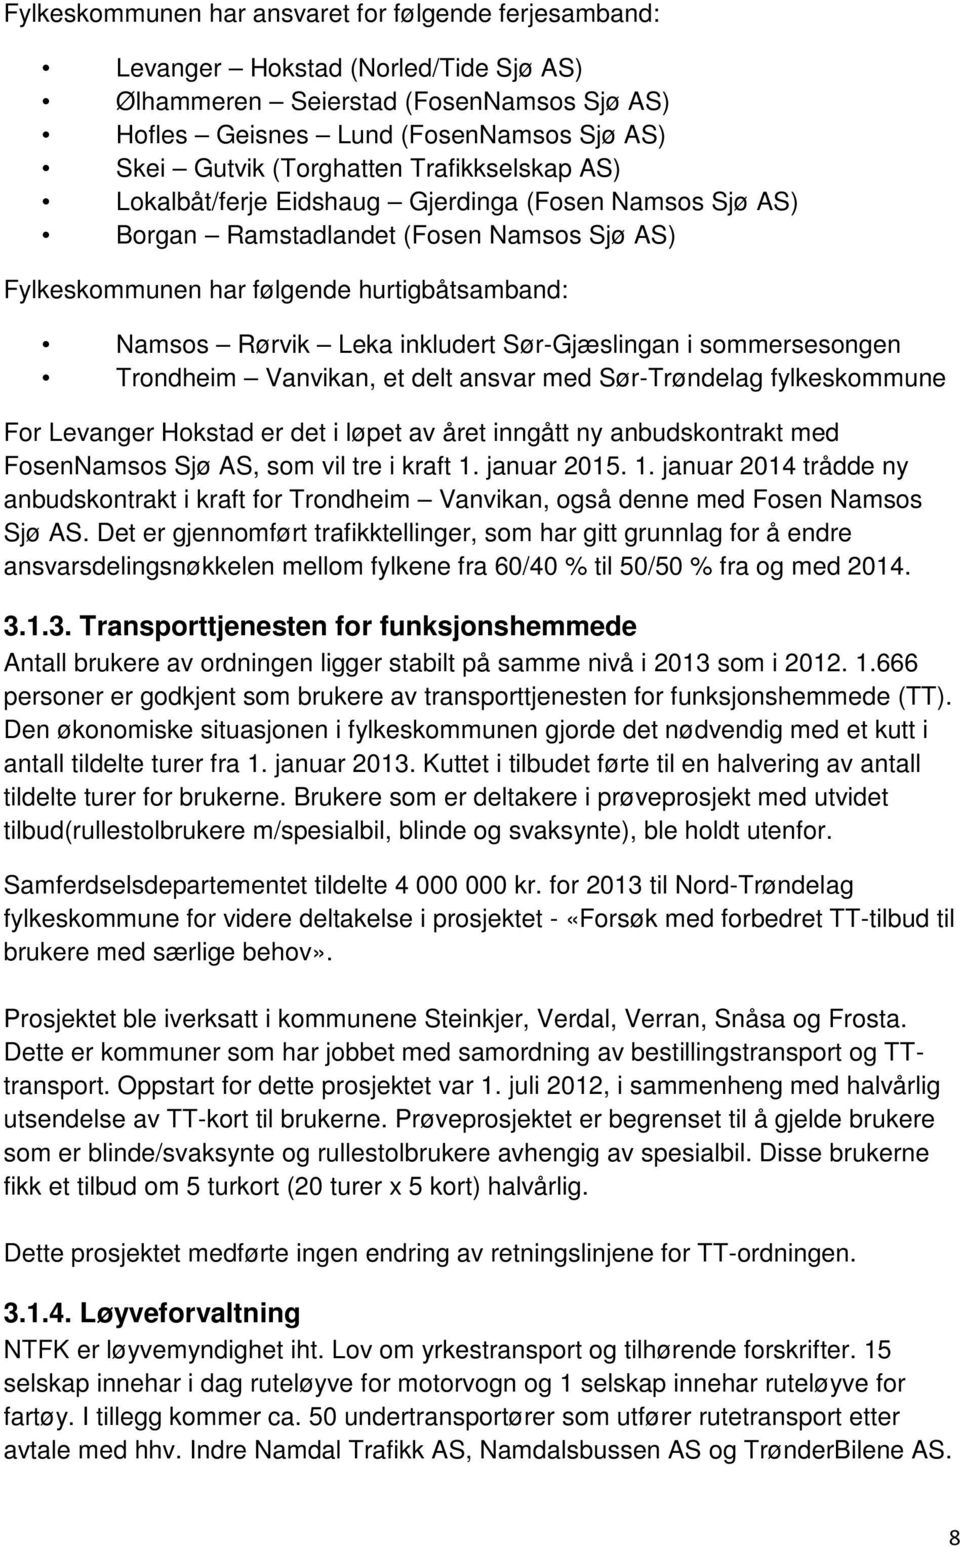 Sør-Gjæslingan i sommersesongen Trondheim Vanvikan, et delt ansvar med Sør-Trøndelag fylkeskommune For Levanger Hokstad er det i løpet av året inngått ny anbudskontrakt med FosenNamsos Sjø AS, som